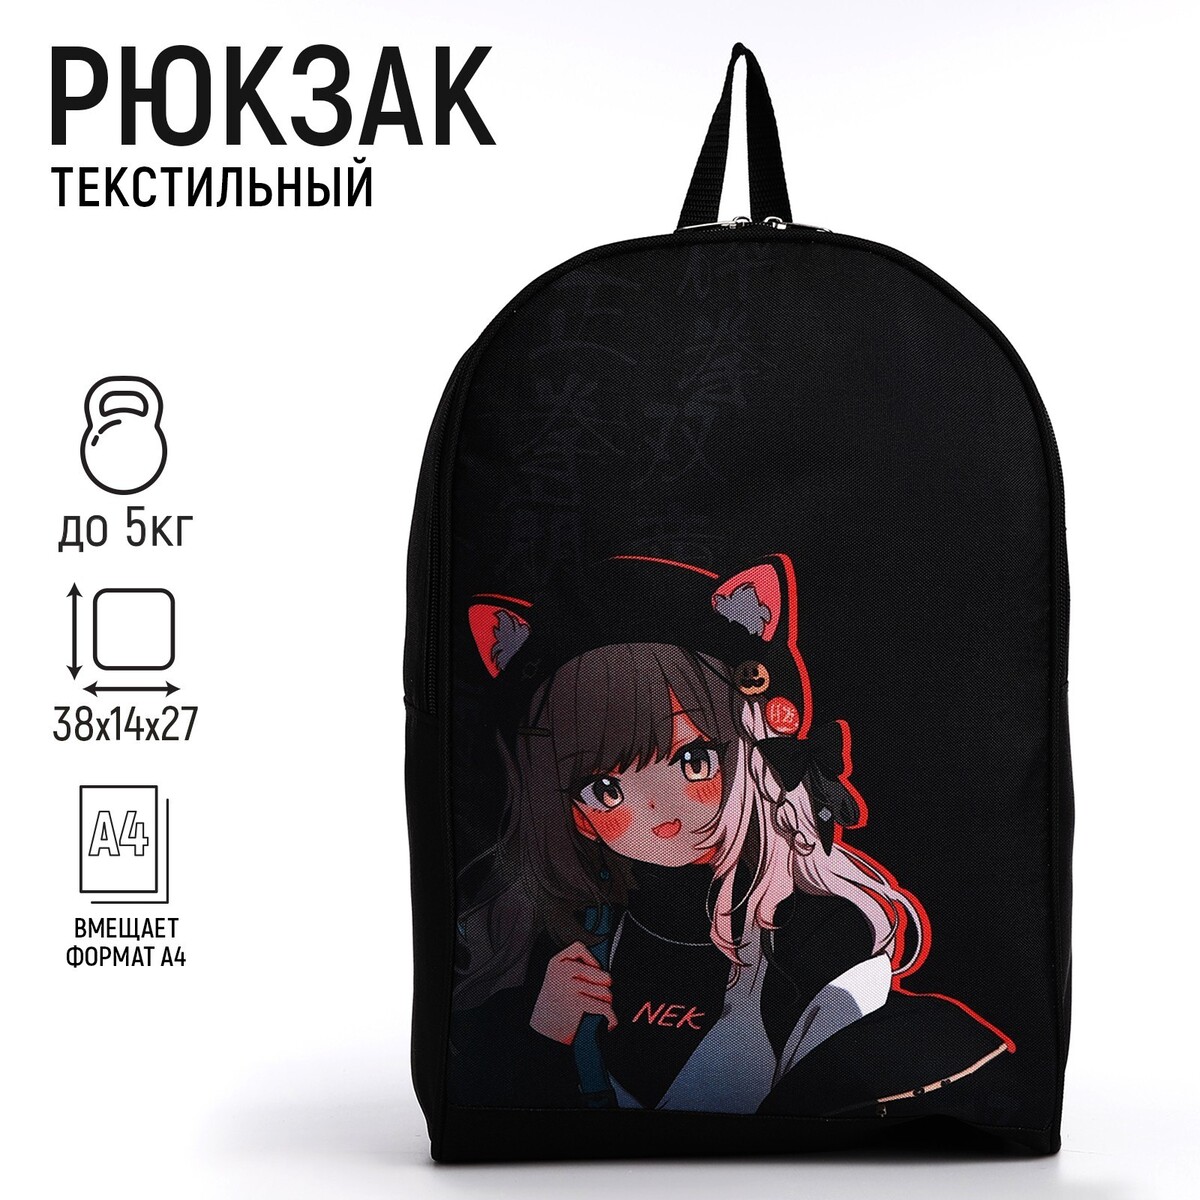 Рюкзак текстильный аниме девочка, 38х14х27 см, цвет черный рюкзак аниме с тачкой 40 27 12см 1отд